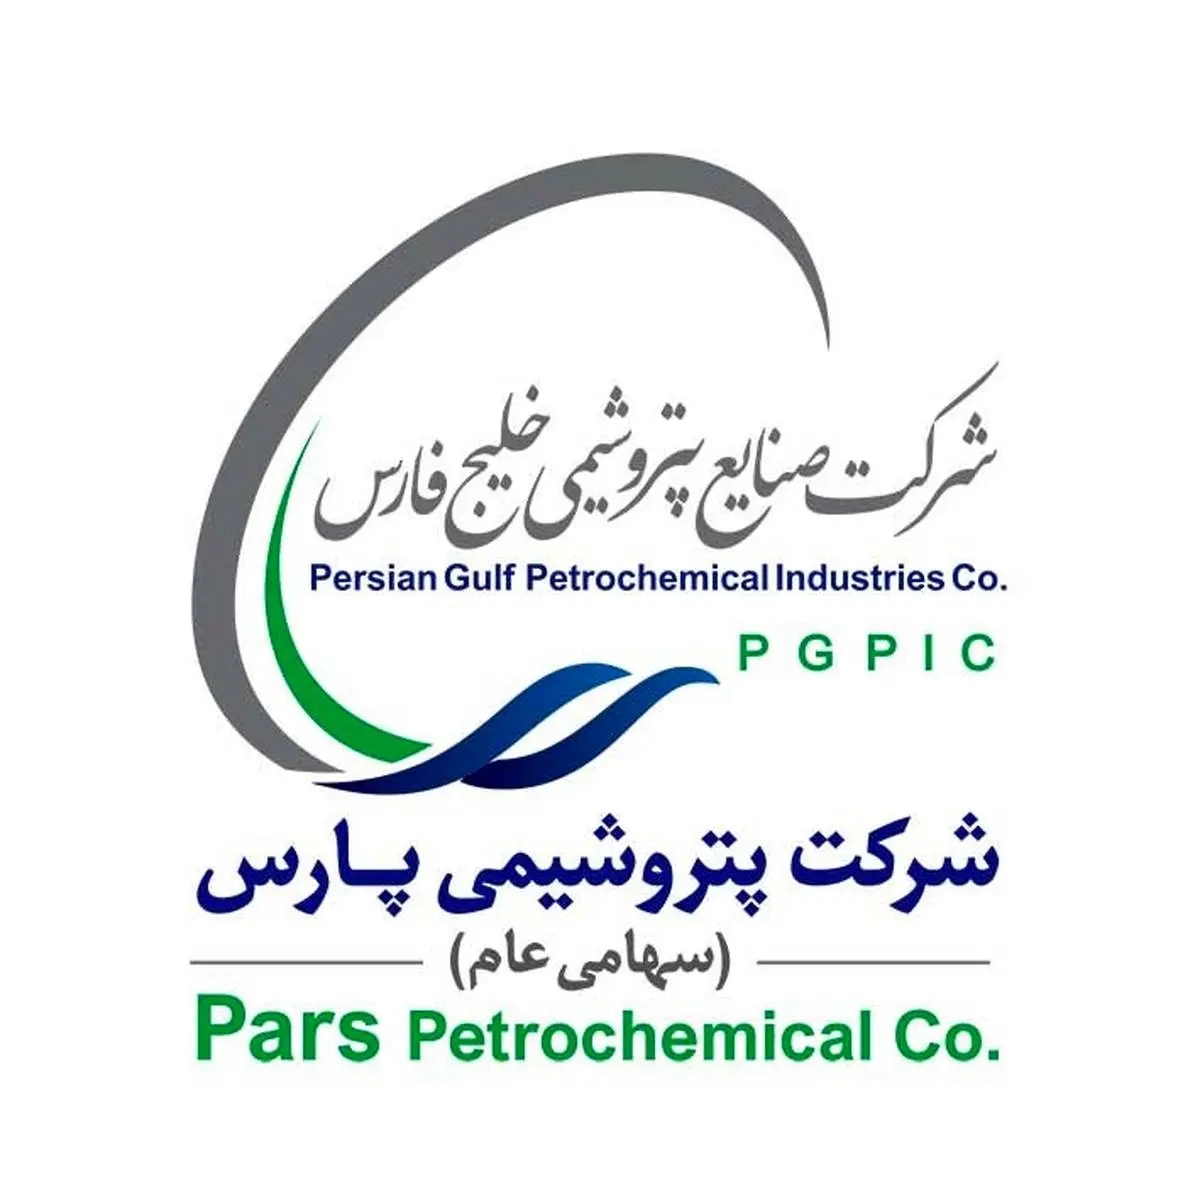 اهداء لوح تقدیر از سوی مدیرکل حفاظت محیط زیست استان بوشهر به مدیرعامل شرکت پتروشیمی پارس